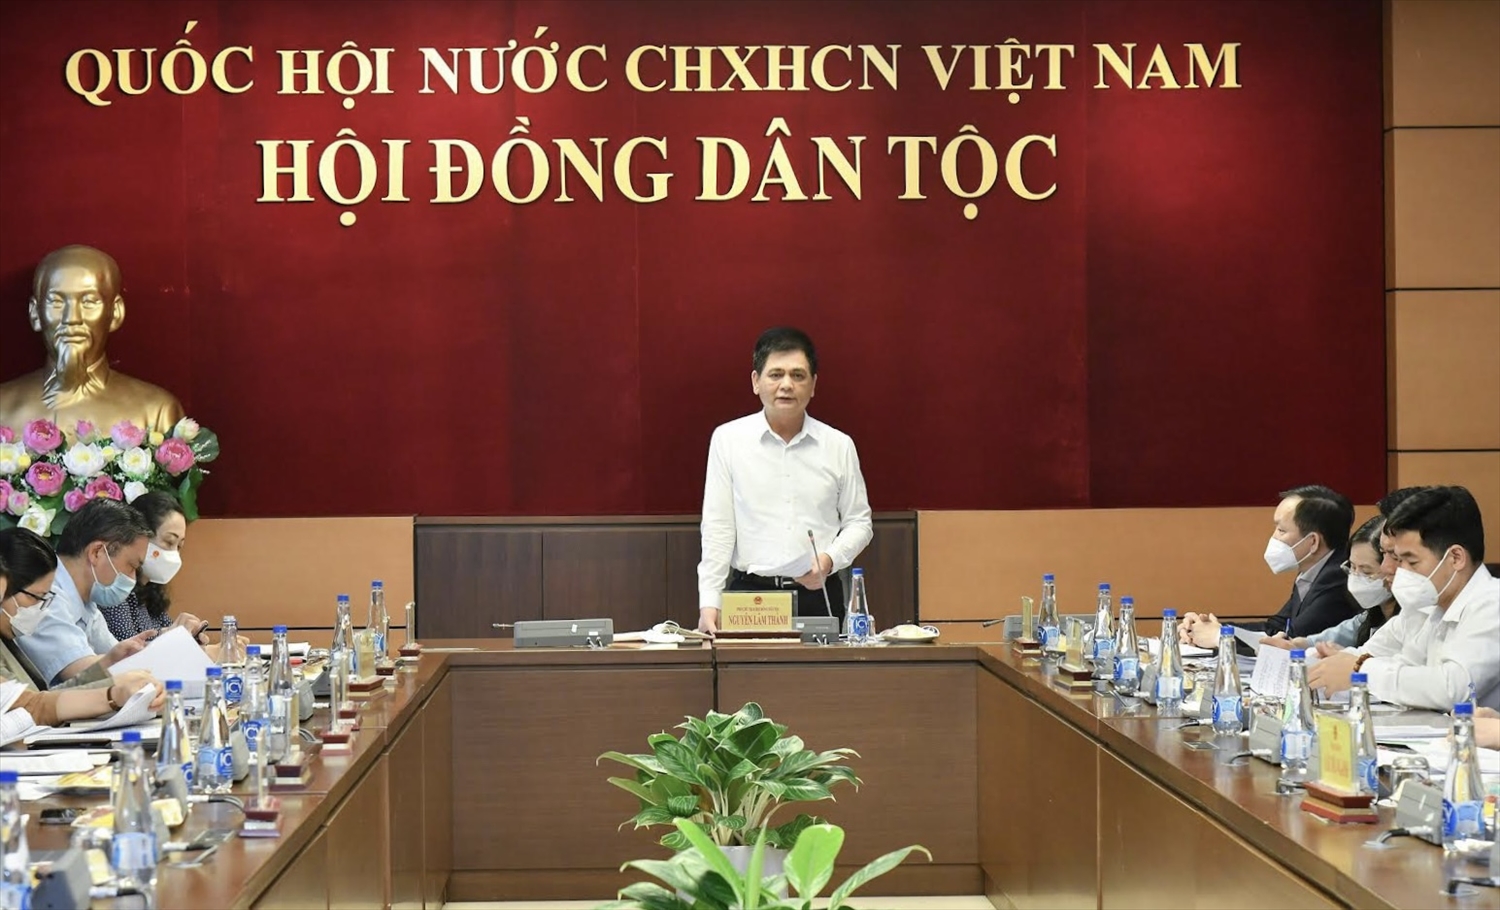 Ông Nguyễn Lâm Thành, Phó Chủ tịch HĐDT của Quốc hội phát biểu ý kiến tại phiên họp